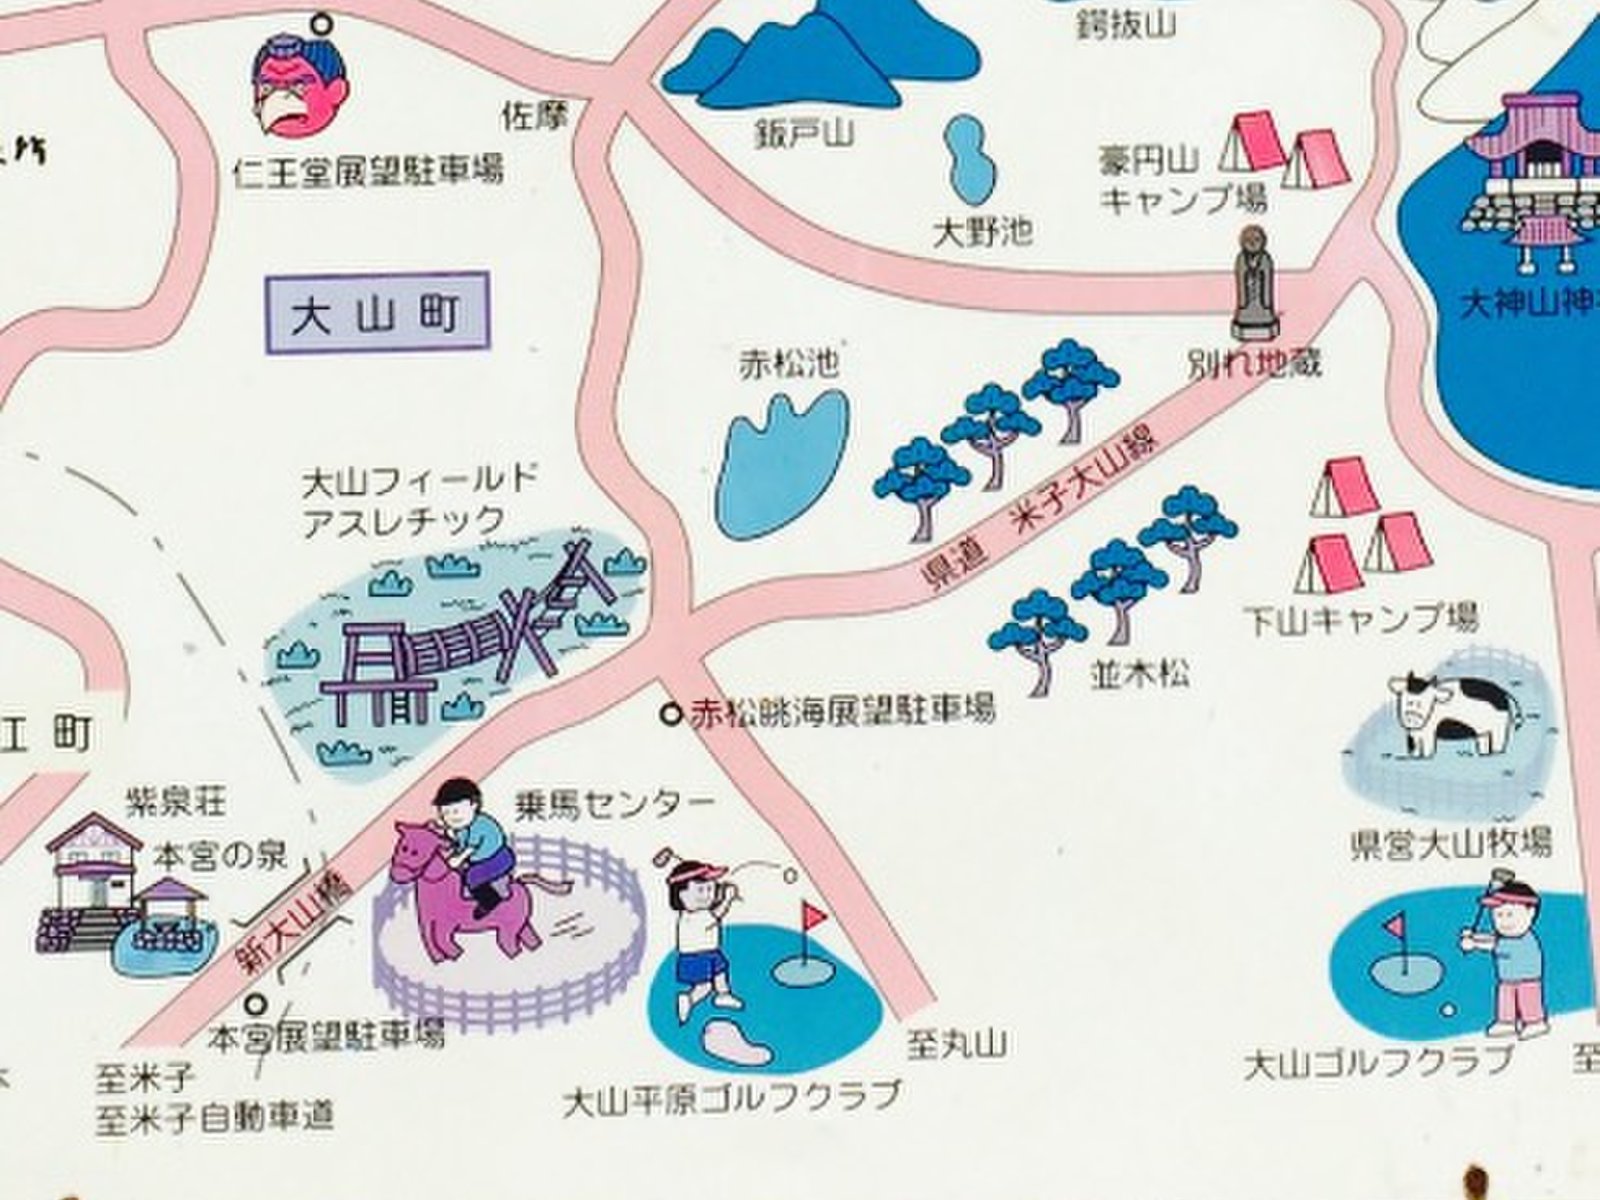 夏休みにドライブで行きたい大山 レークホテルや展望台 鳥取県大山の夏のドライブスポット教えます Playlife プレイライフ